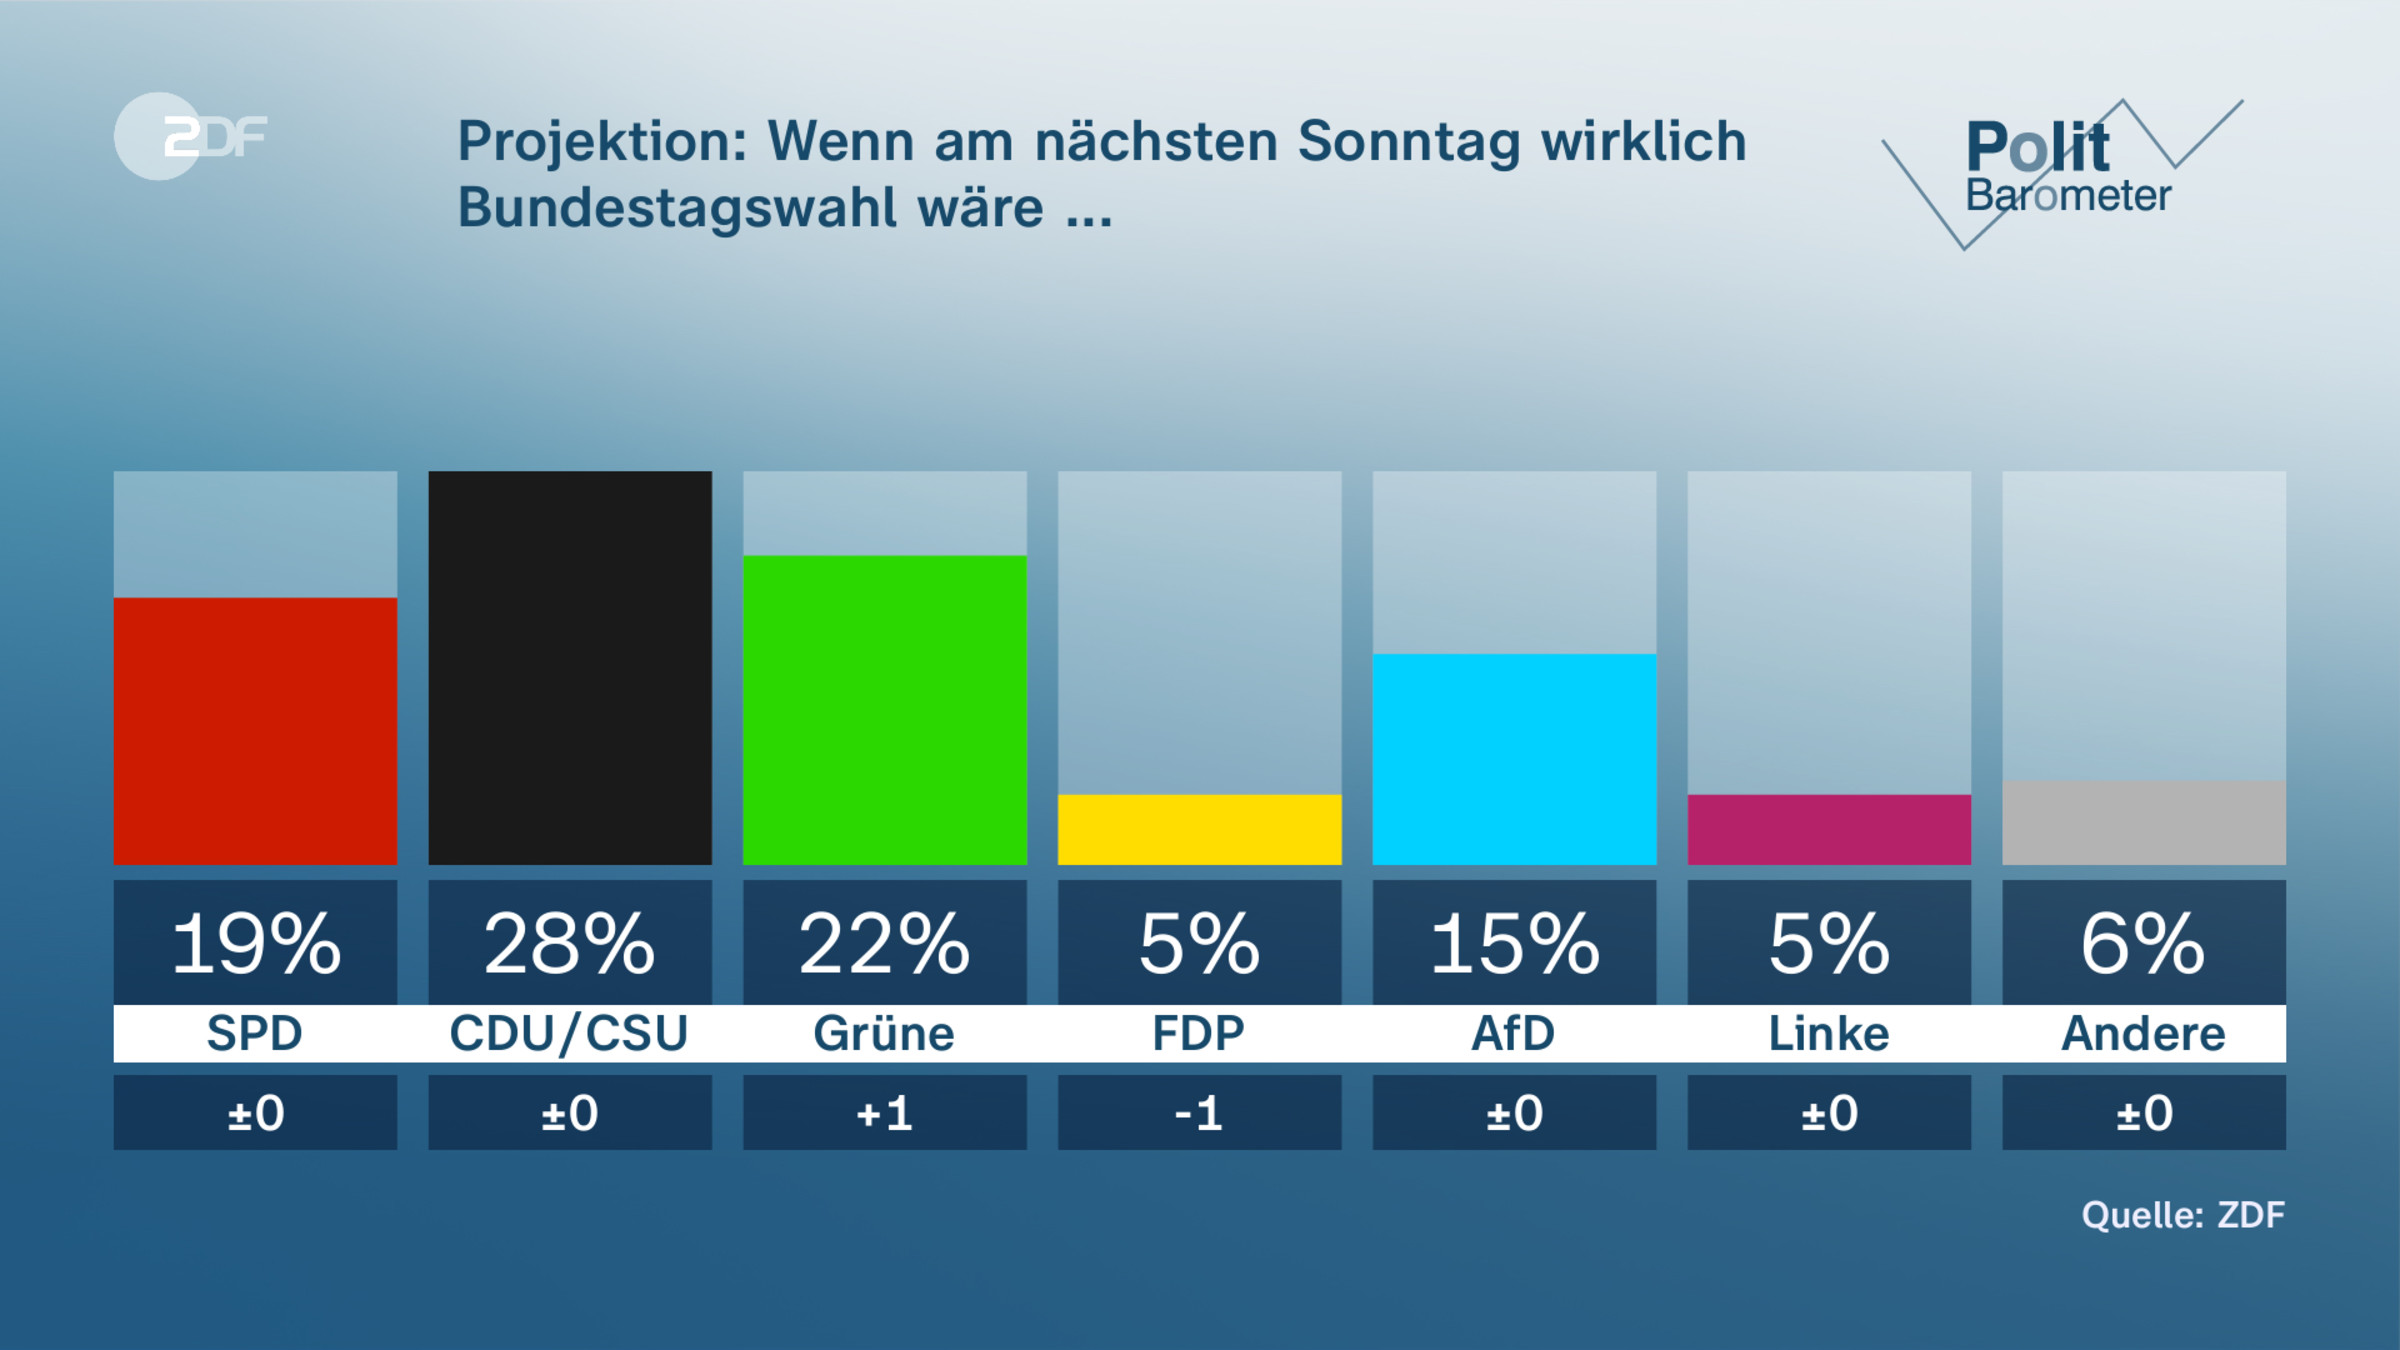 Projektion: Wenn am nächsten Sonntag wirklich Bundestagswahl wäre ...